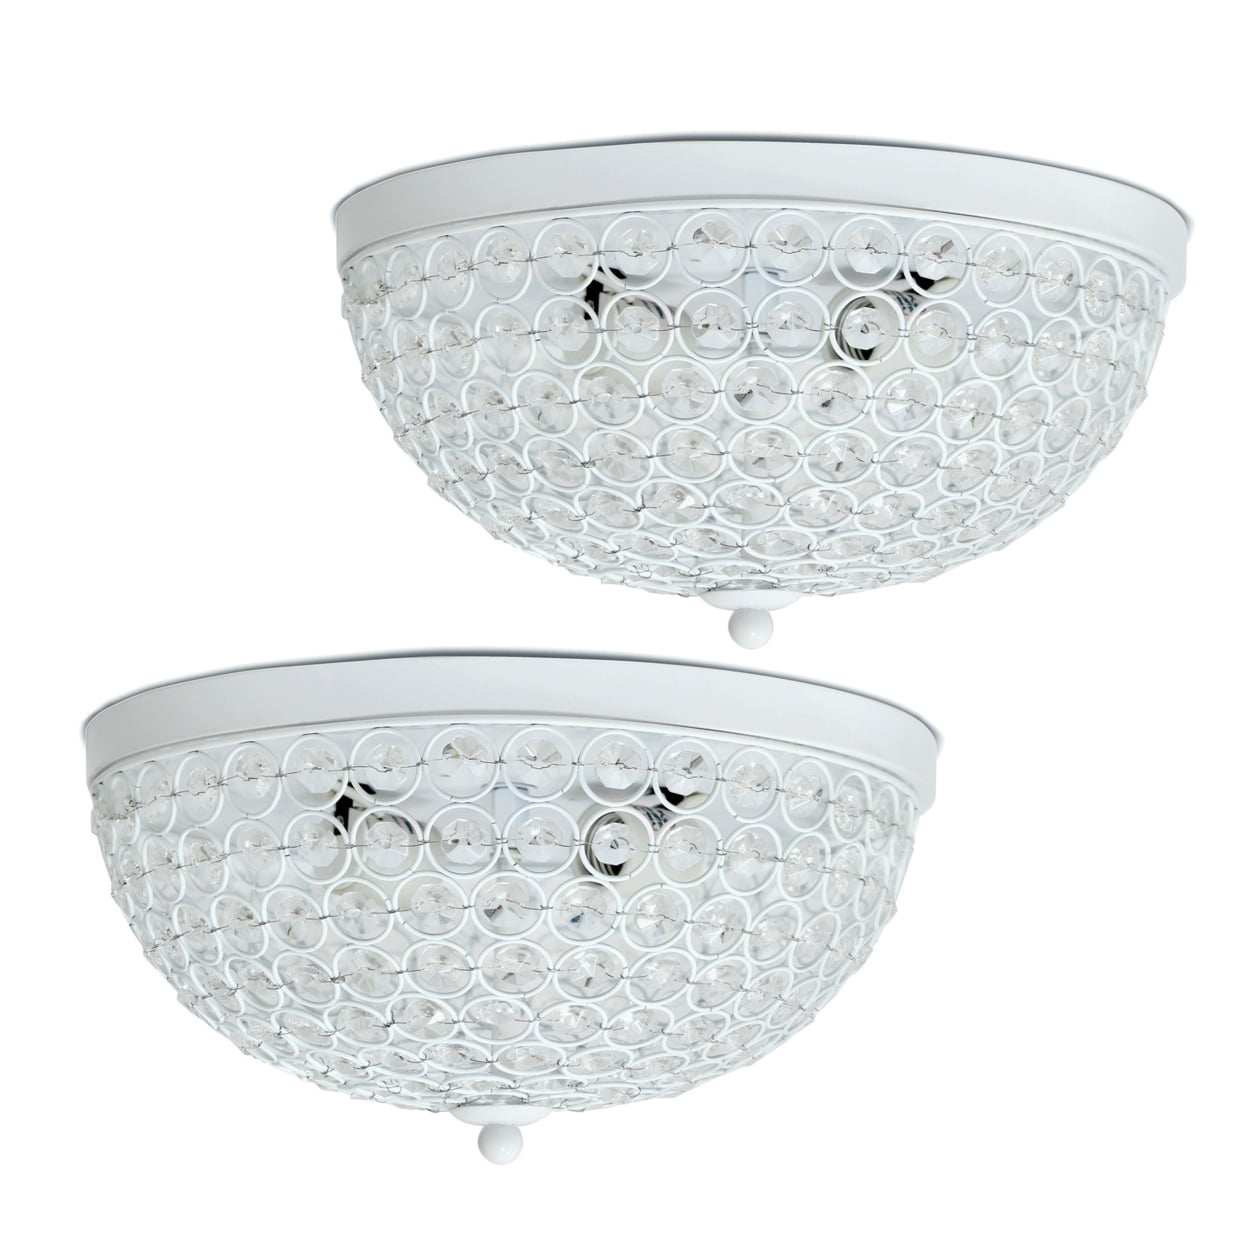 Elegant Designs Fm1000-wht-2pk 2 Light Elipse Crystal Flush Mount Ceiling Light, White - Pack Of 2